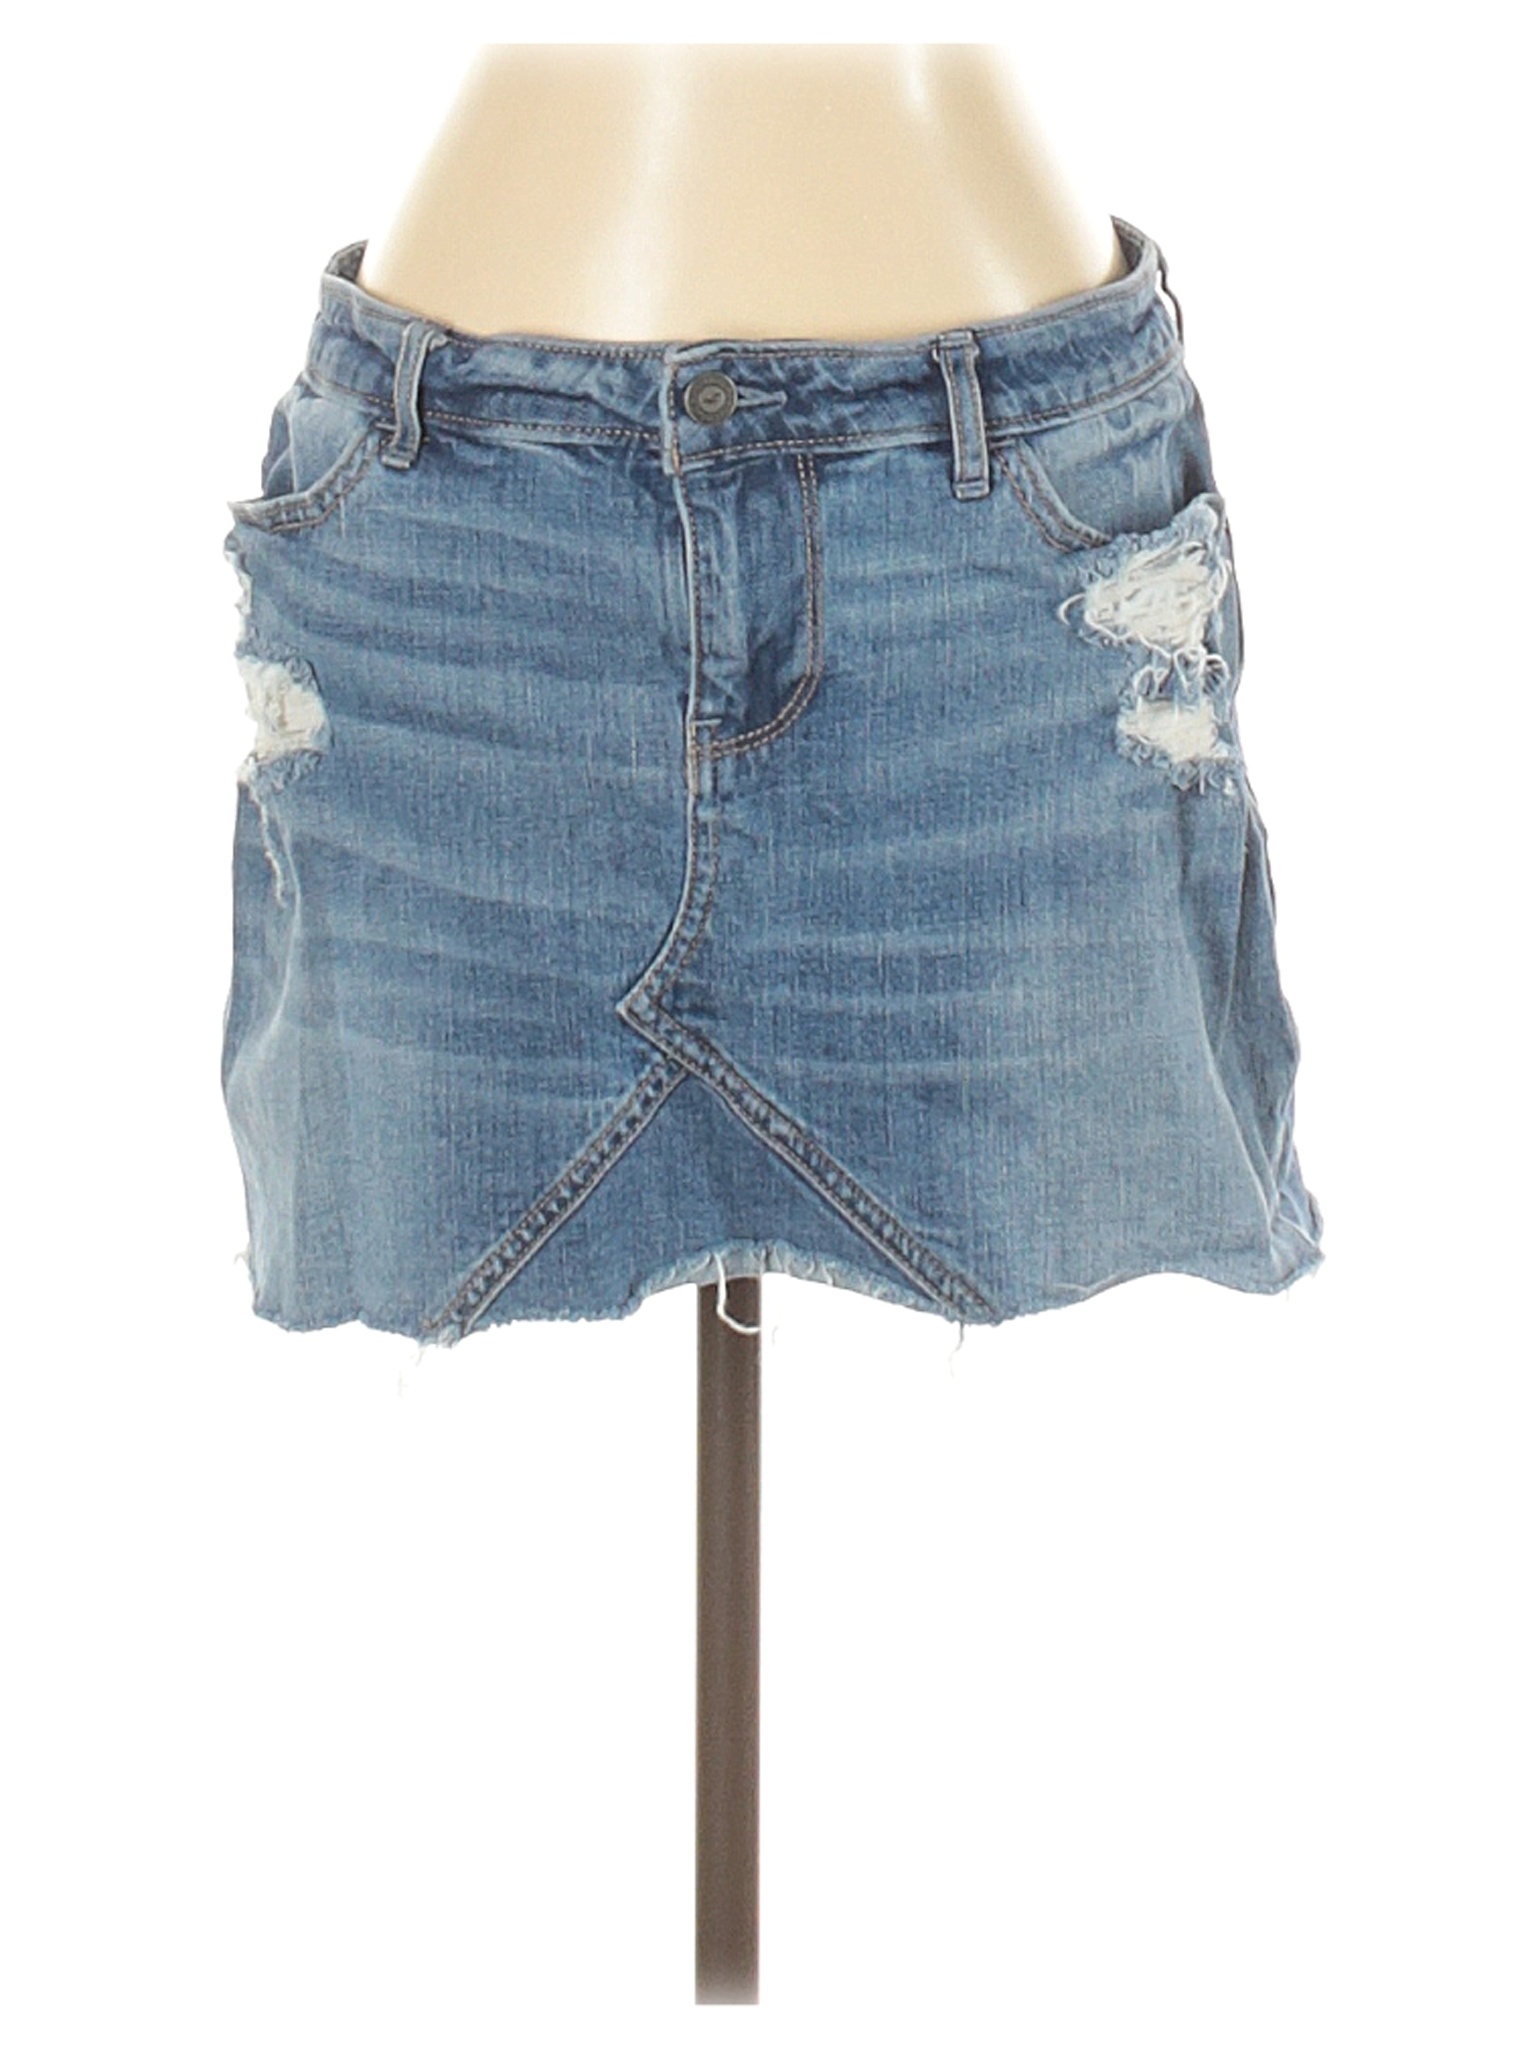 Hollister Women Blue Denim Skirt 5 | eBay